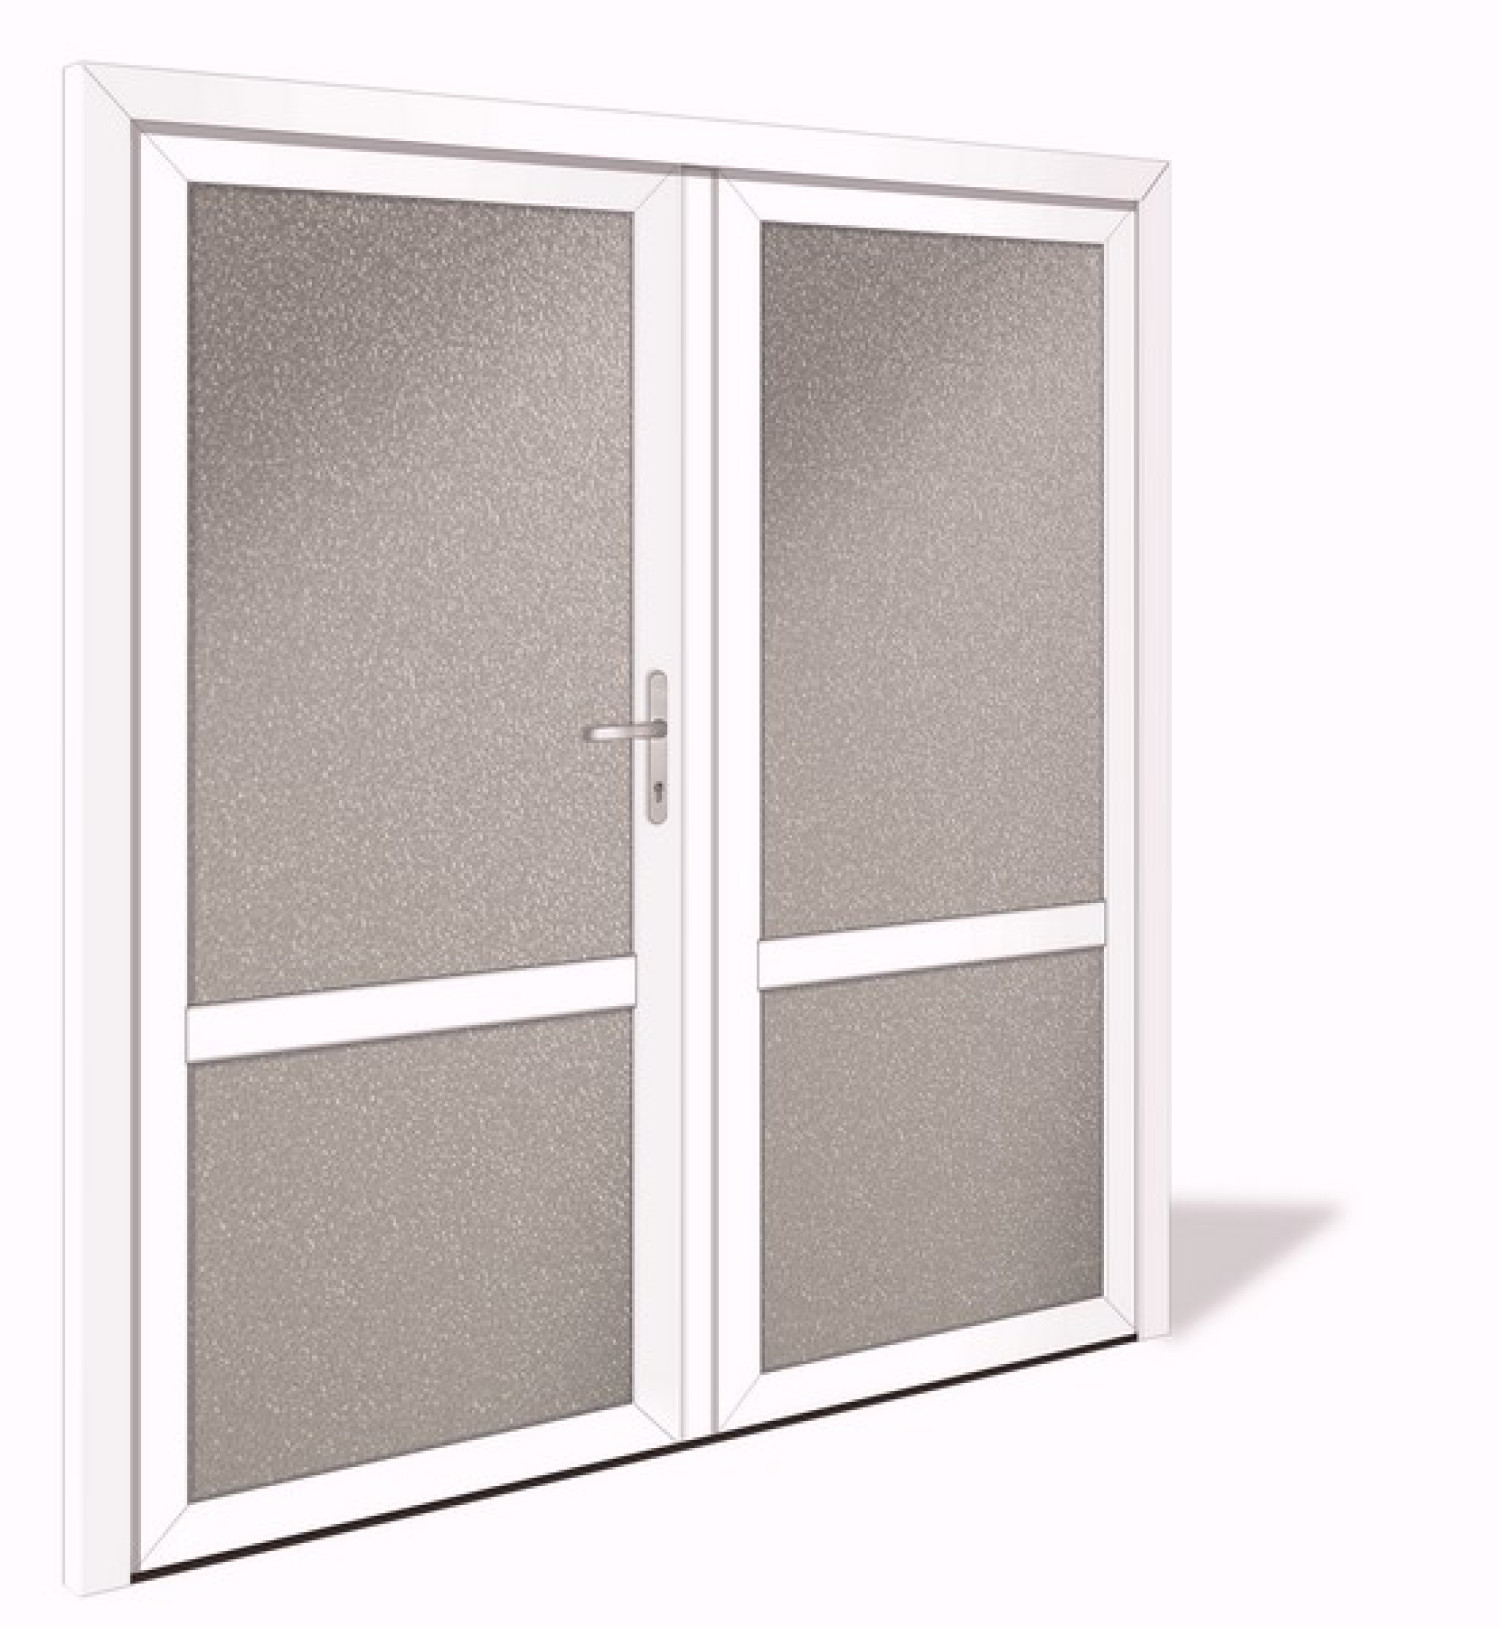 NET 1043-2 Aluminium Doppelflügel Nebeneingangstür mit Glasausschnitt - Interio